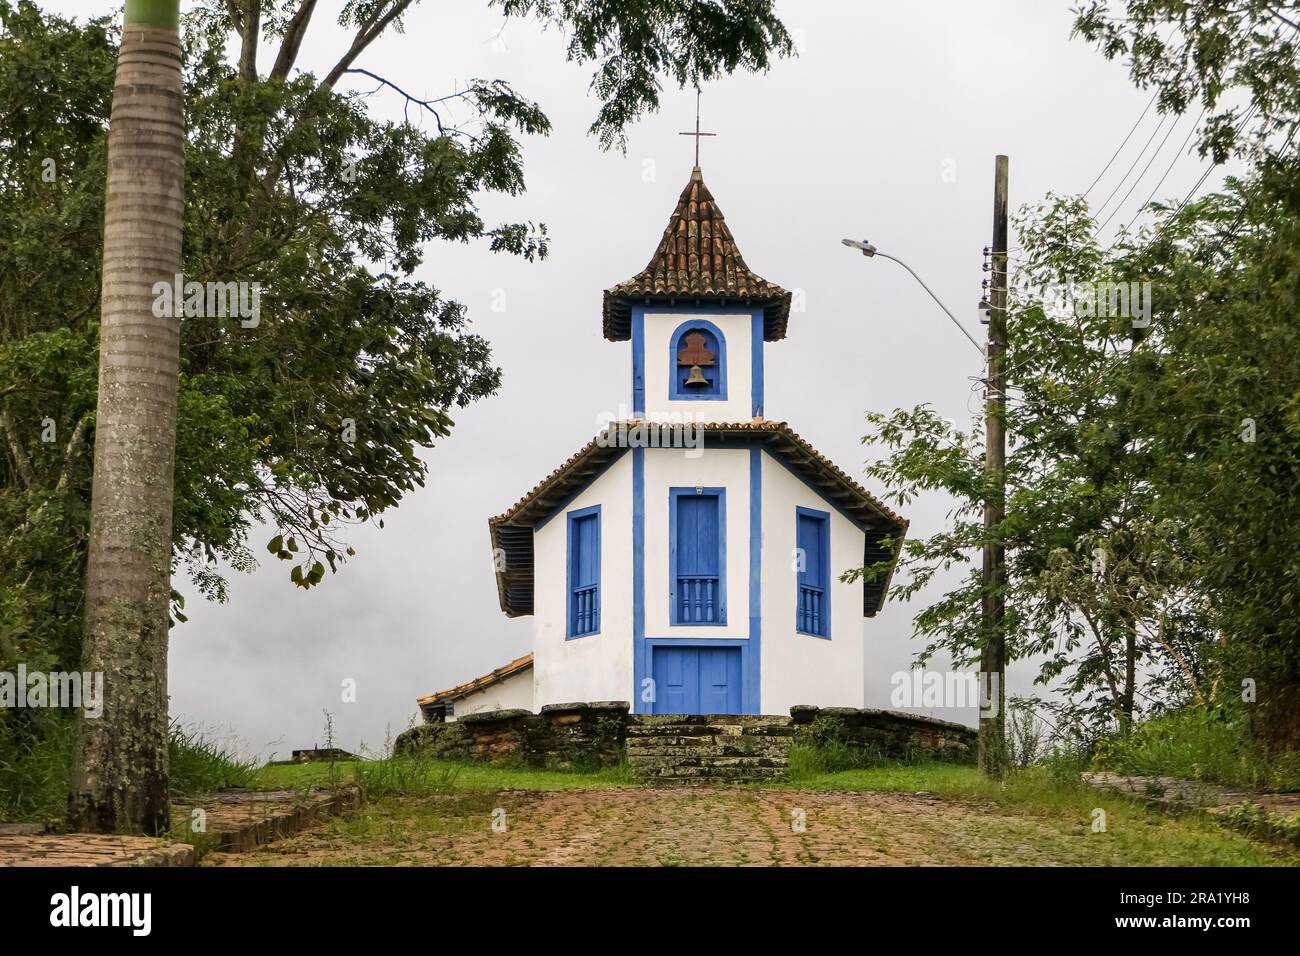 Cappella coloniale incorniciata da alberi e fondali nebbiosi, Catas Altas, Minas Gerais, Brasile Foto Stock